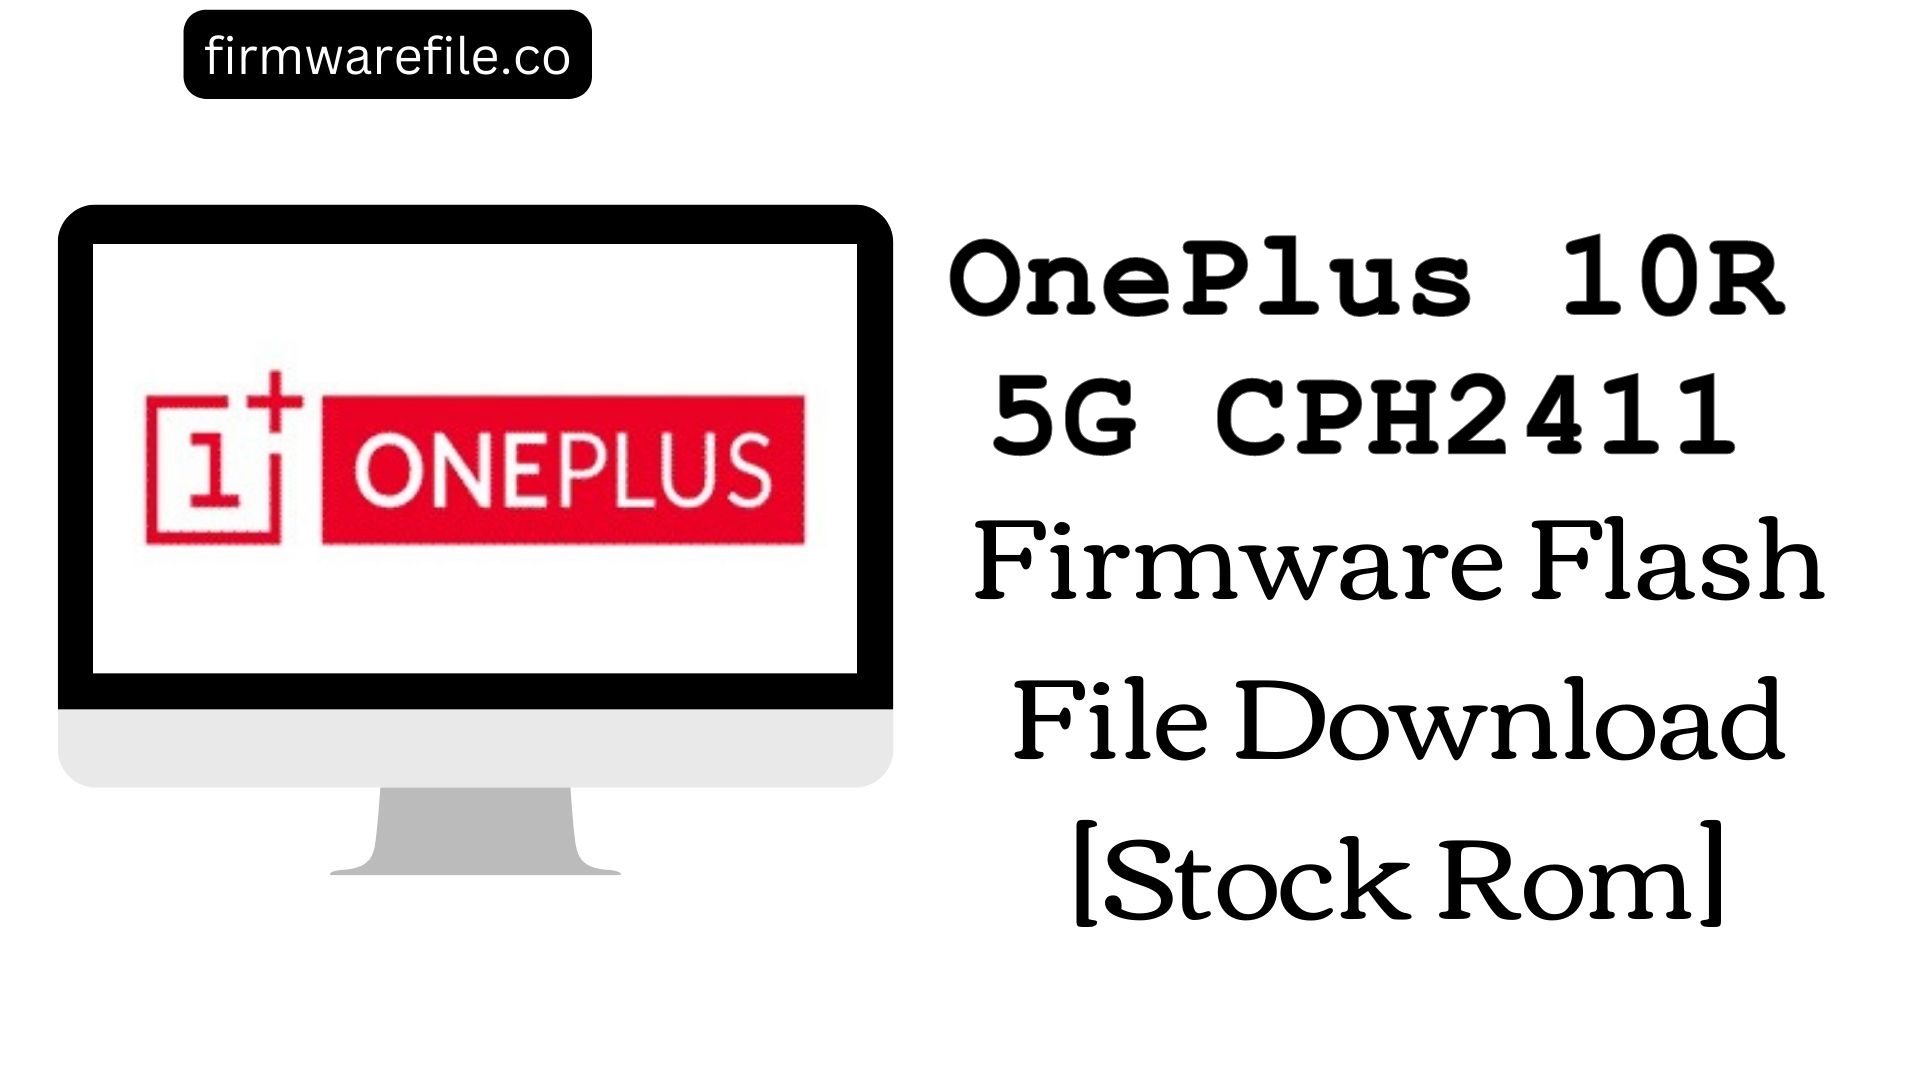 OnePlus 10R 5G CPH2411